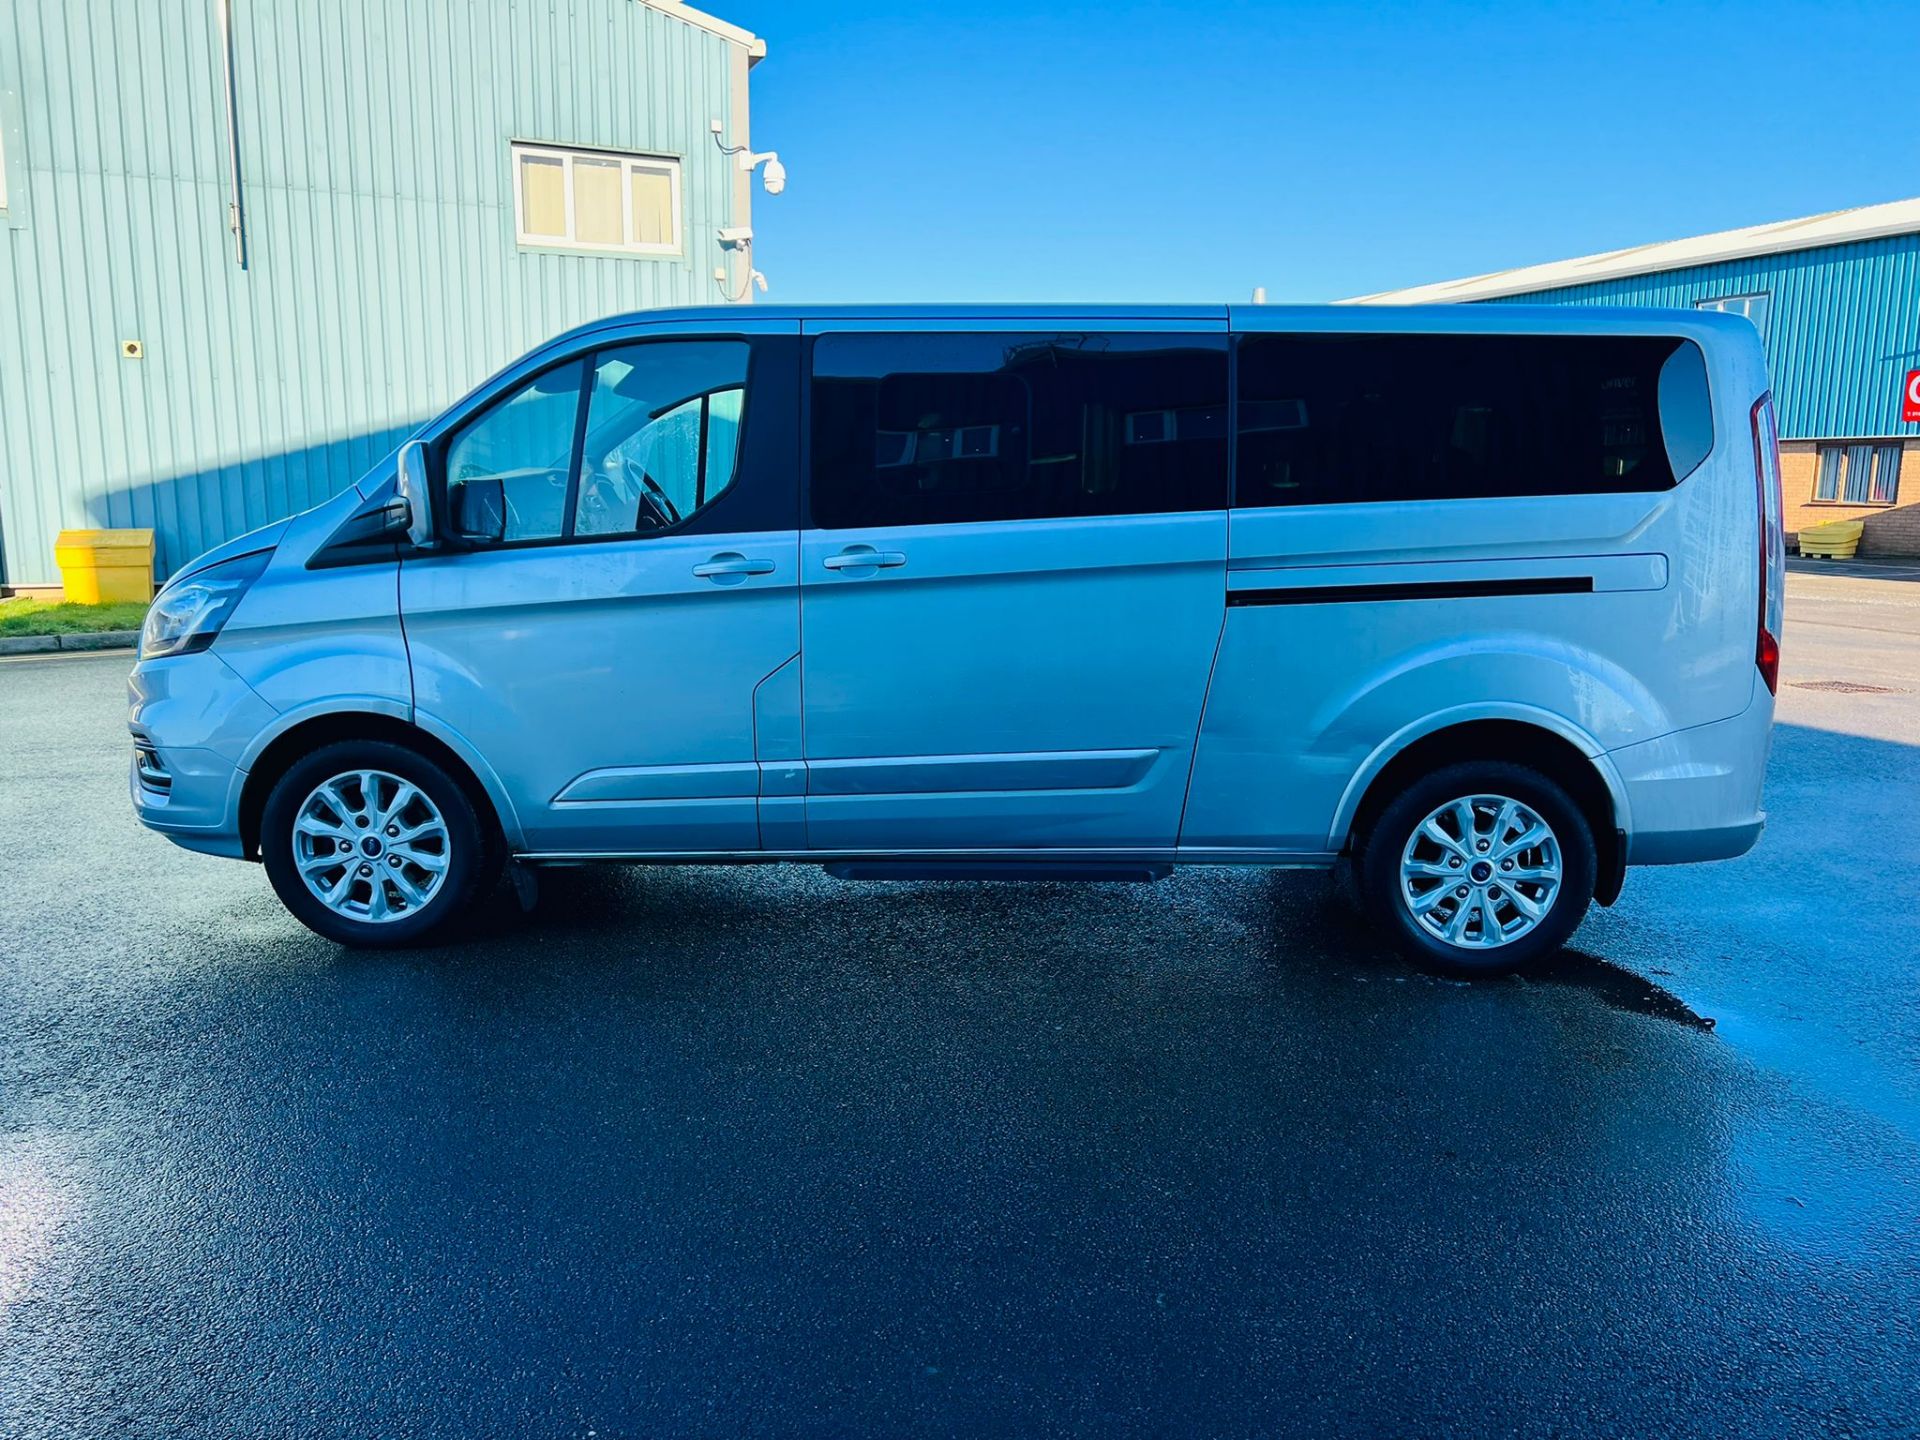 (Reserve Met) Ford Transit Custom 310 130 2.0 Tdci Titanium 9 Seater MiniBus 2019 Model - Air Con - - Image 8 of 36